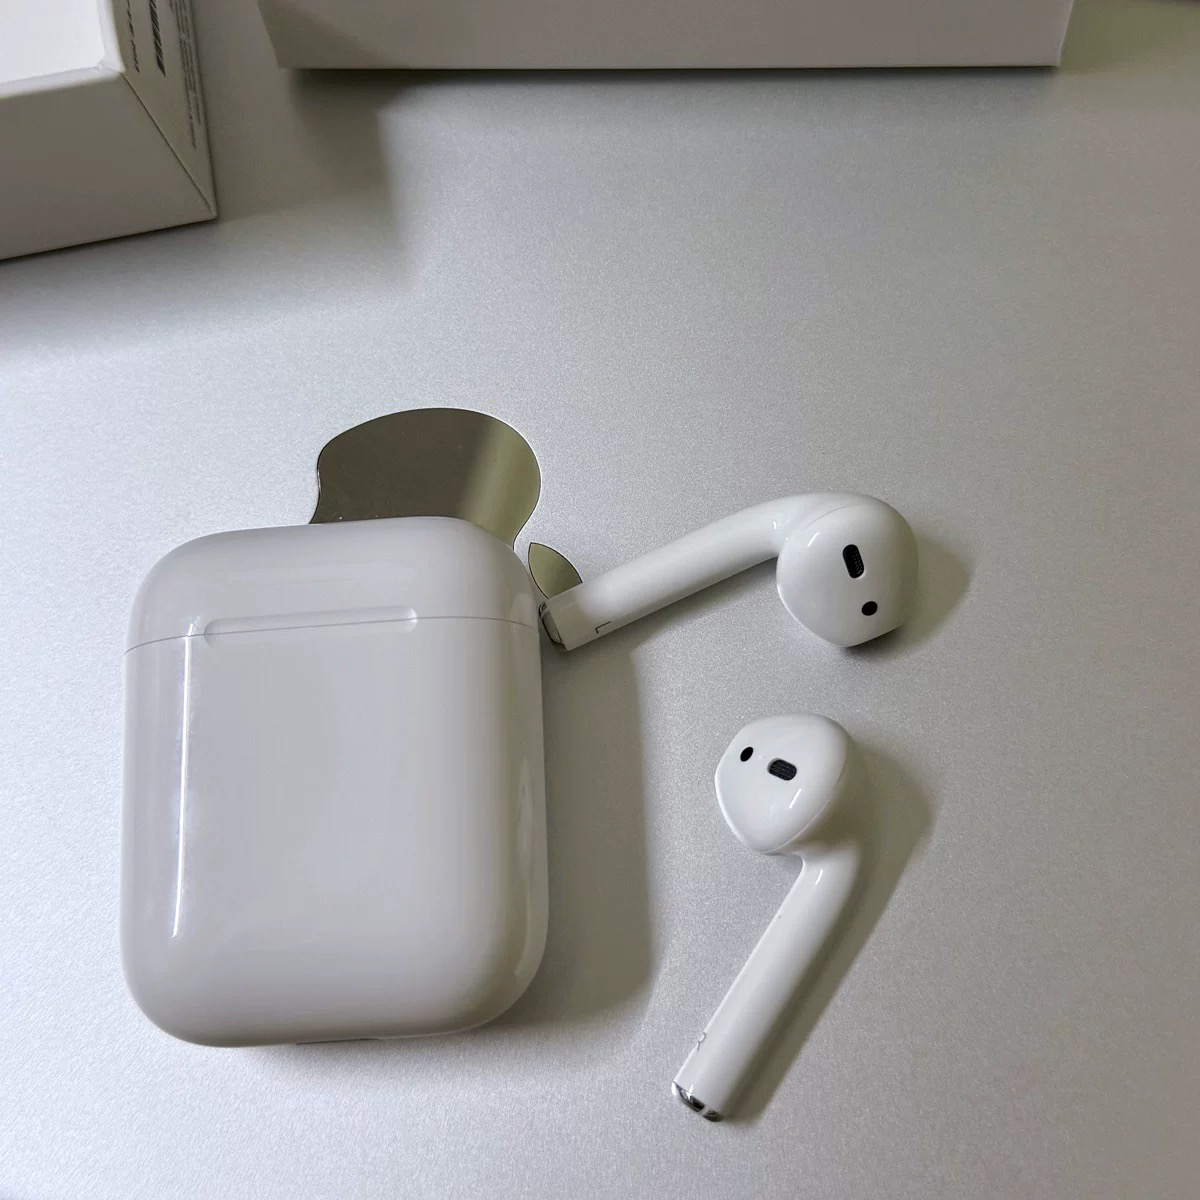 苹果/Apple Airpods2(配有线充电盒) 无线蓝牙耳机 适配iphone/ipad/Watch晒单图